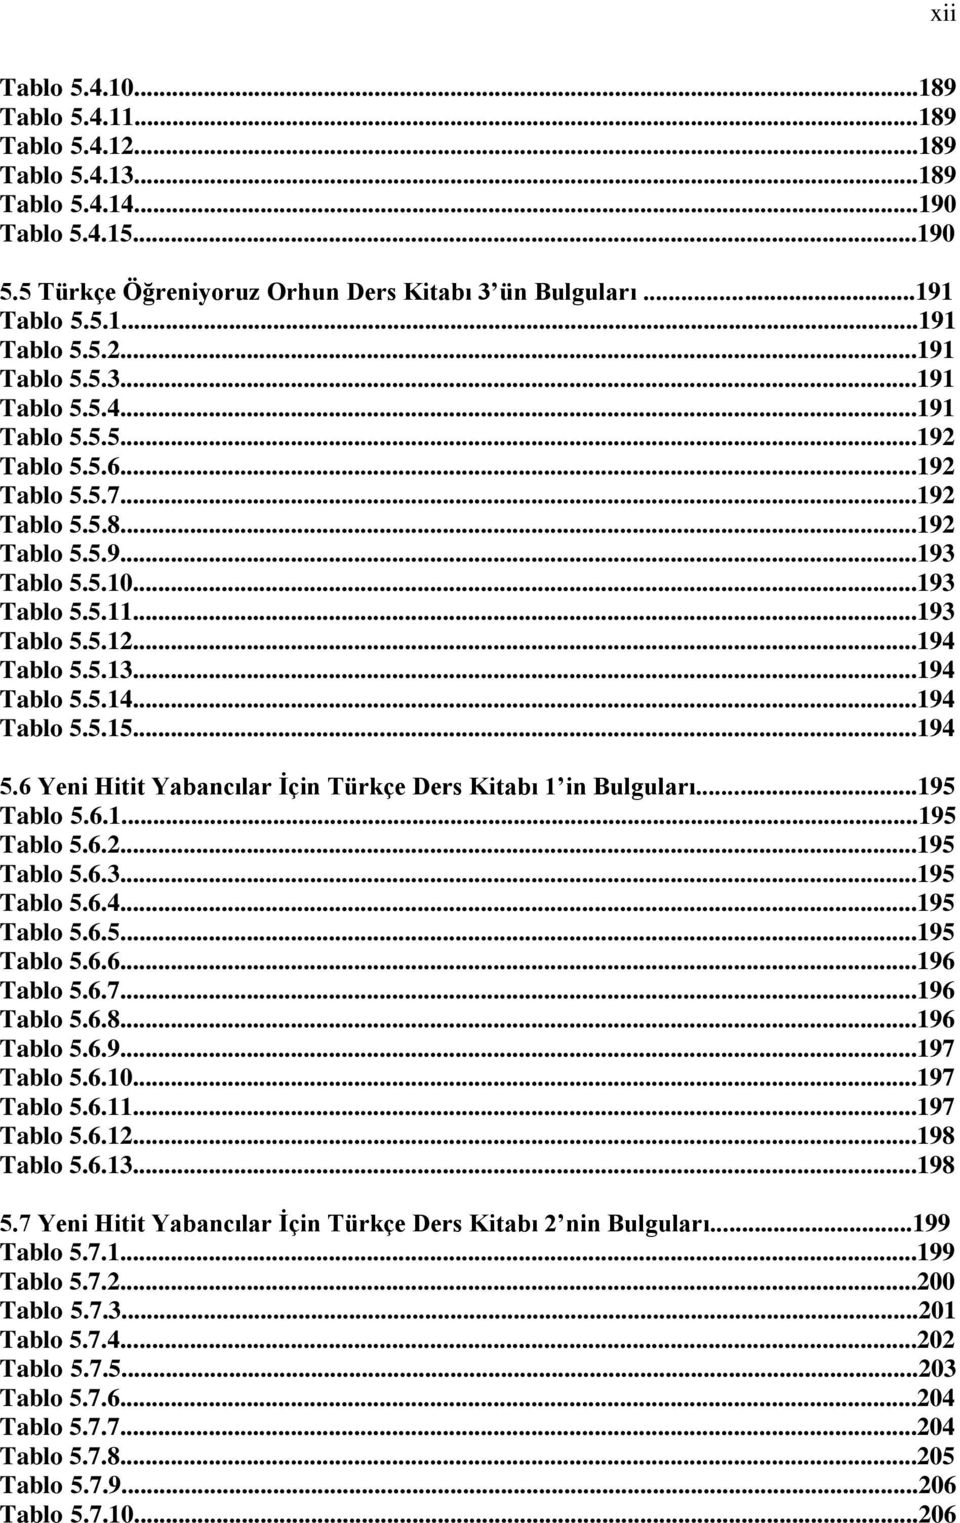 6 Yeni Hitit Yabancılar Ġçin Türkçe Ders Kitabı 1 in Bulguları...195 Tablo 5.6.1...195 Tablo 5.6.2...195 Tablo 5.6.3...195 Tablo 5.6.4...195 Tablo 5.6.5...195 Tablo 5.6.6...196 Tablo 5.6.7.